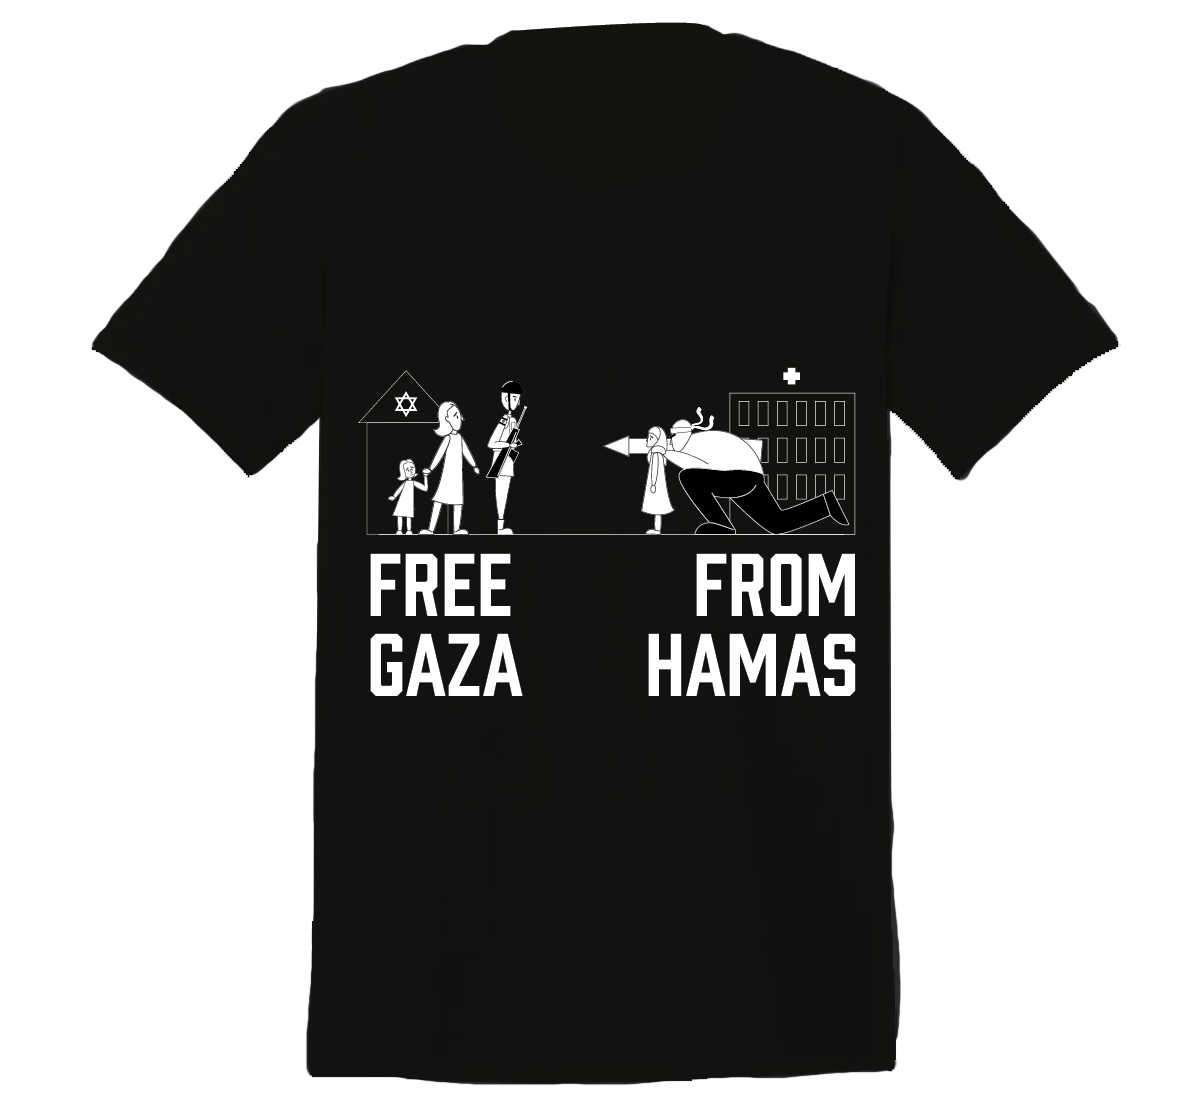 Free Gaza From Hamas T-Shirt (Unisex, Black)